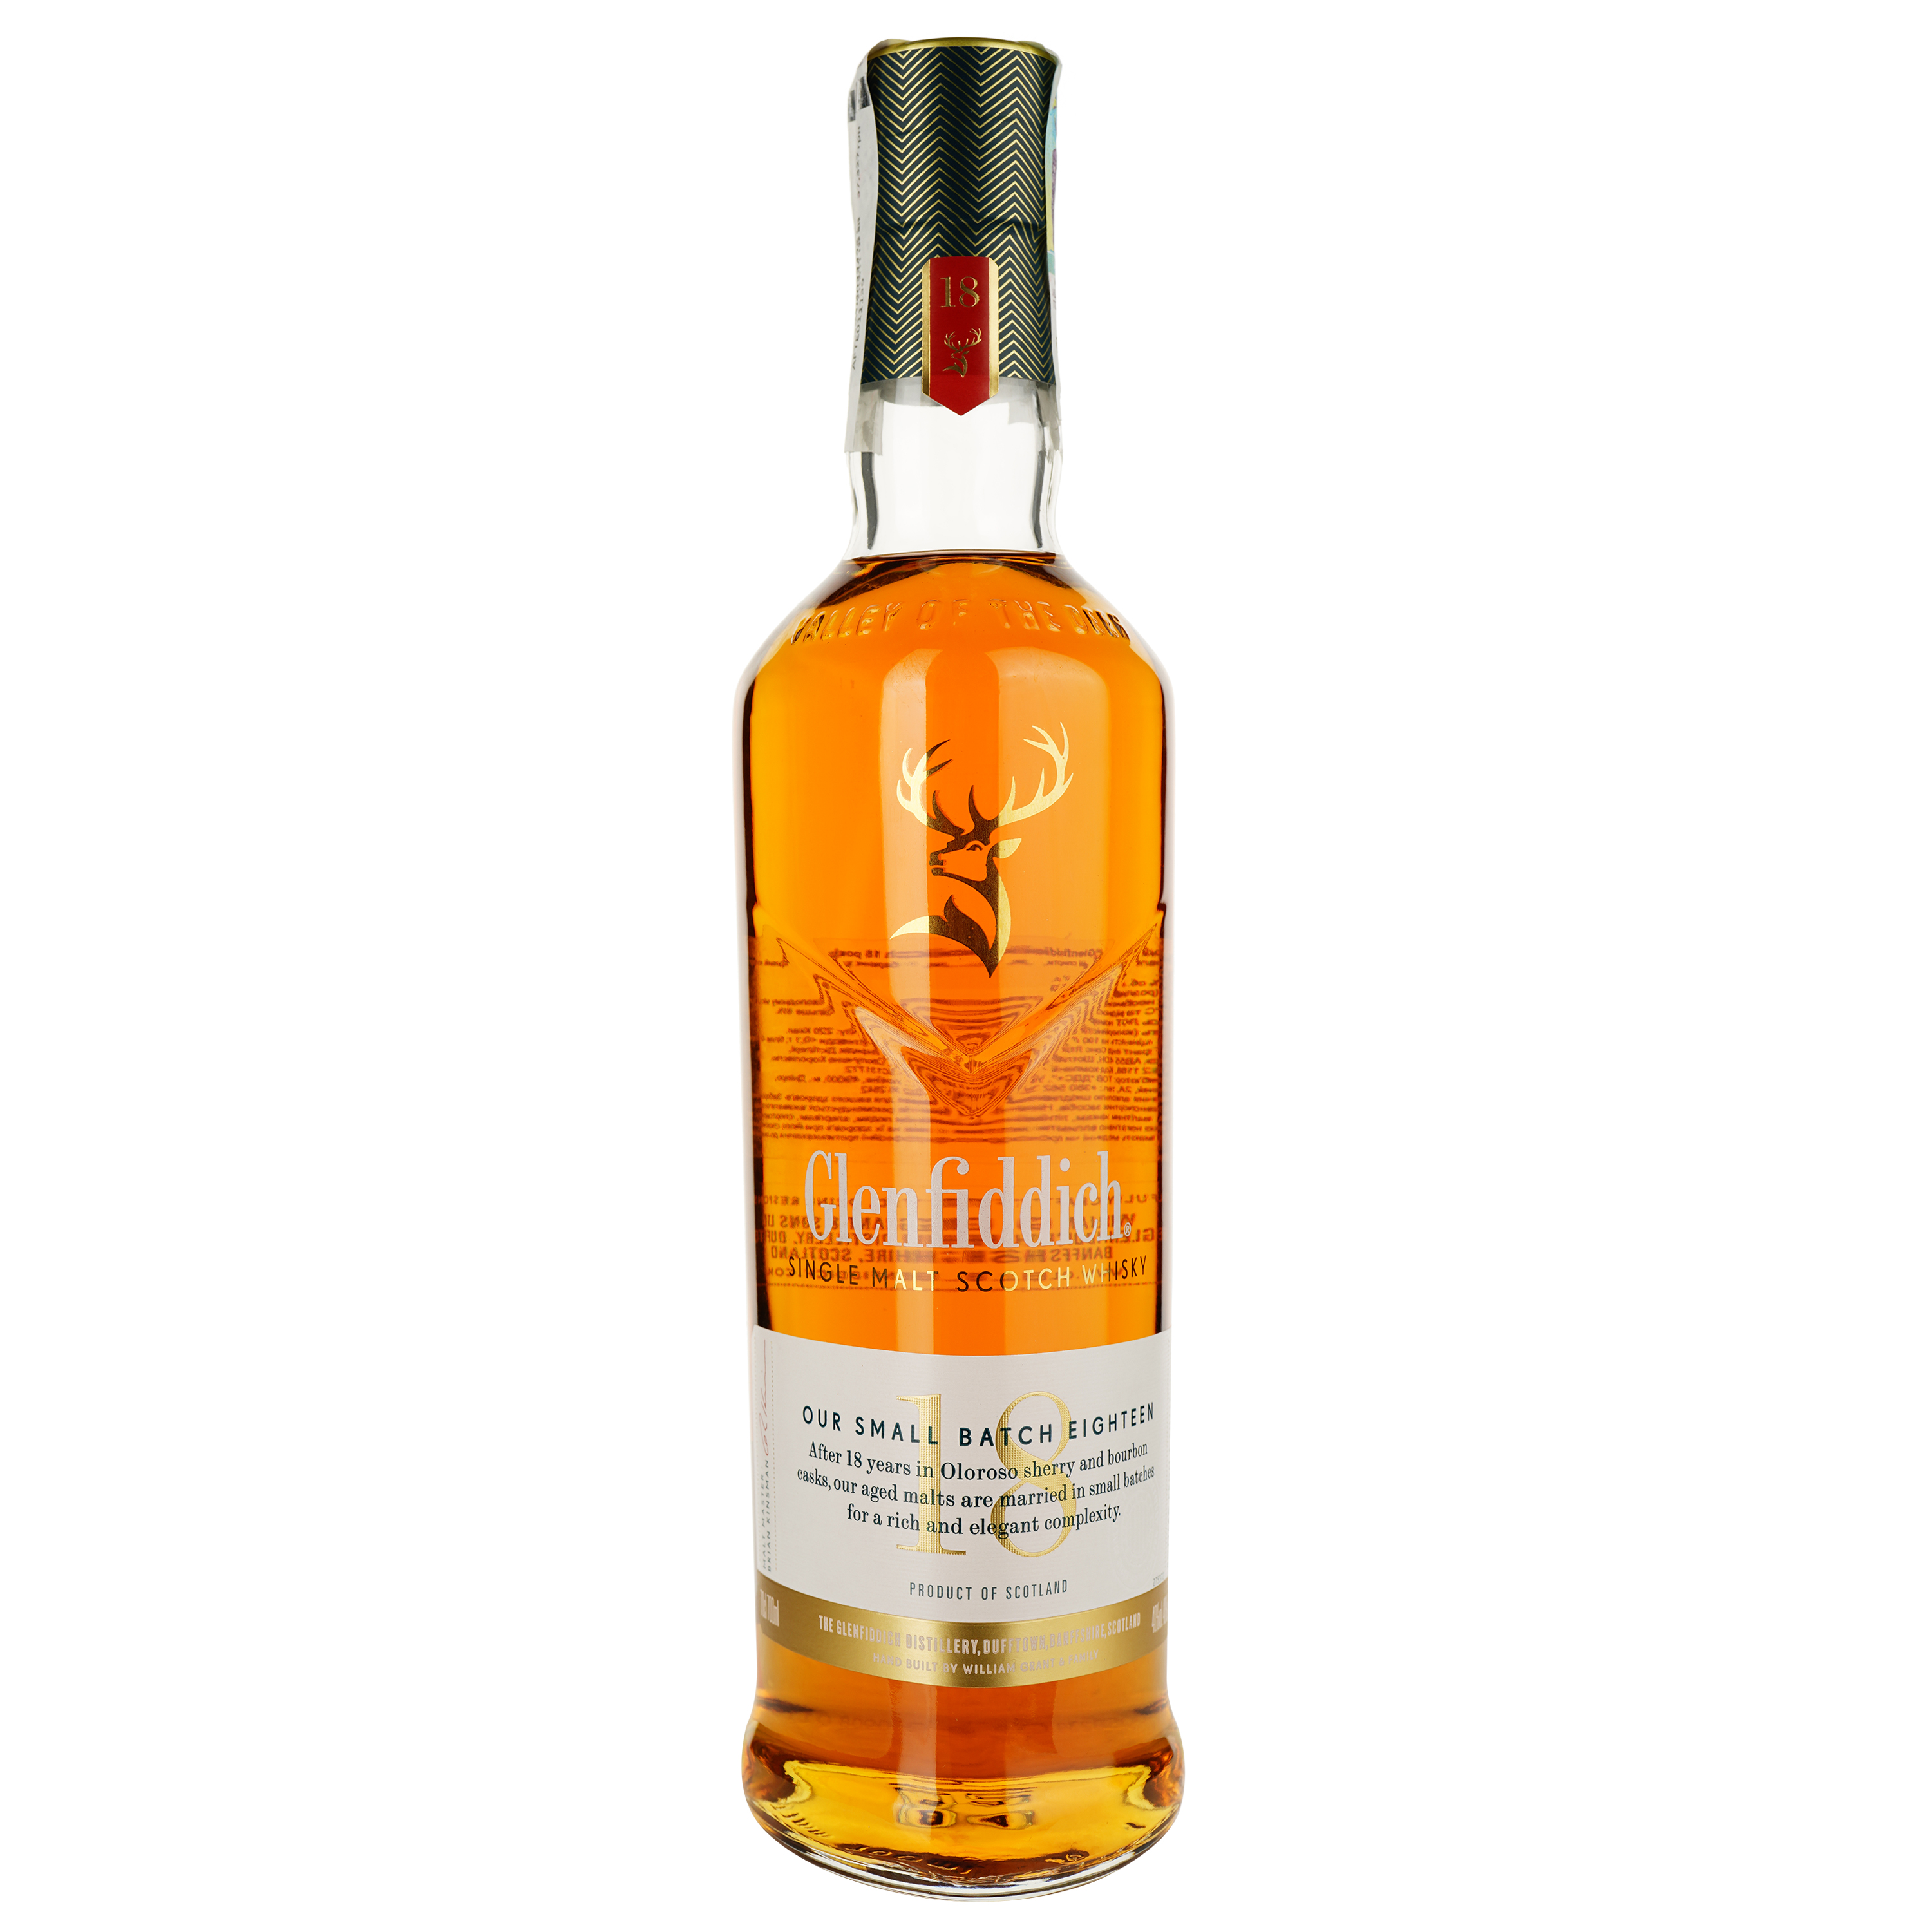 Виски Glenfiddich Single Malt Scotch 18 yo, в подарочной упаковке, 40 %, 0,7 л (476800) - фото 2